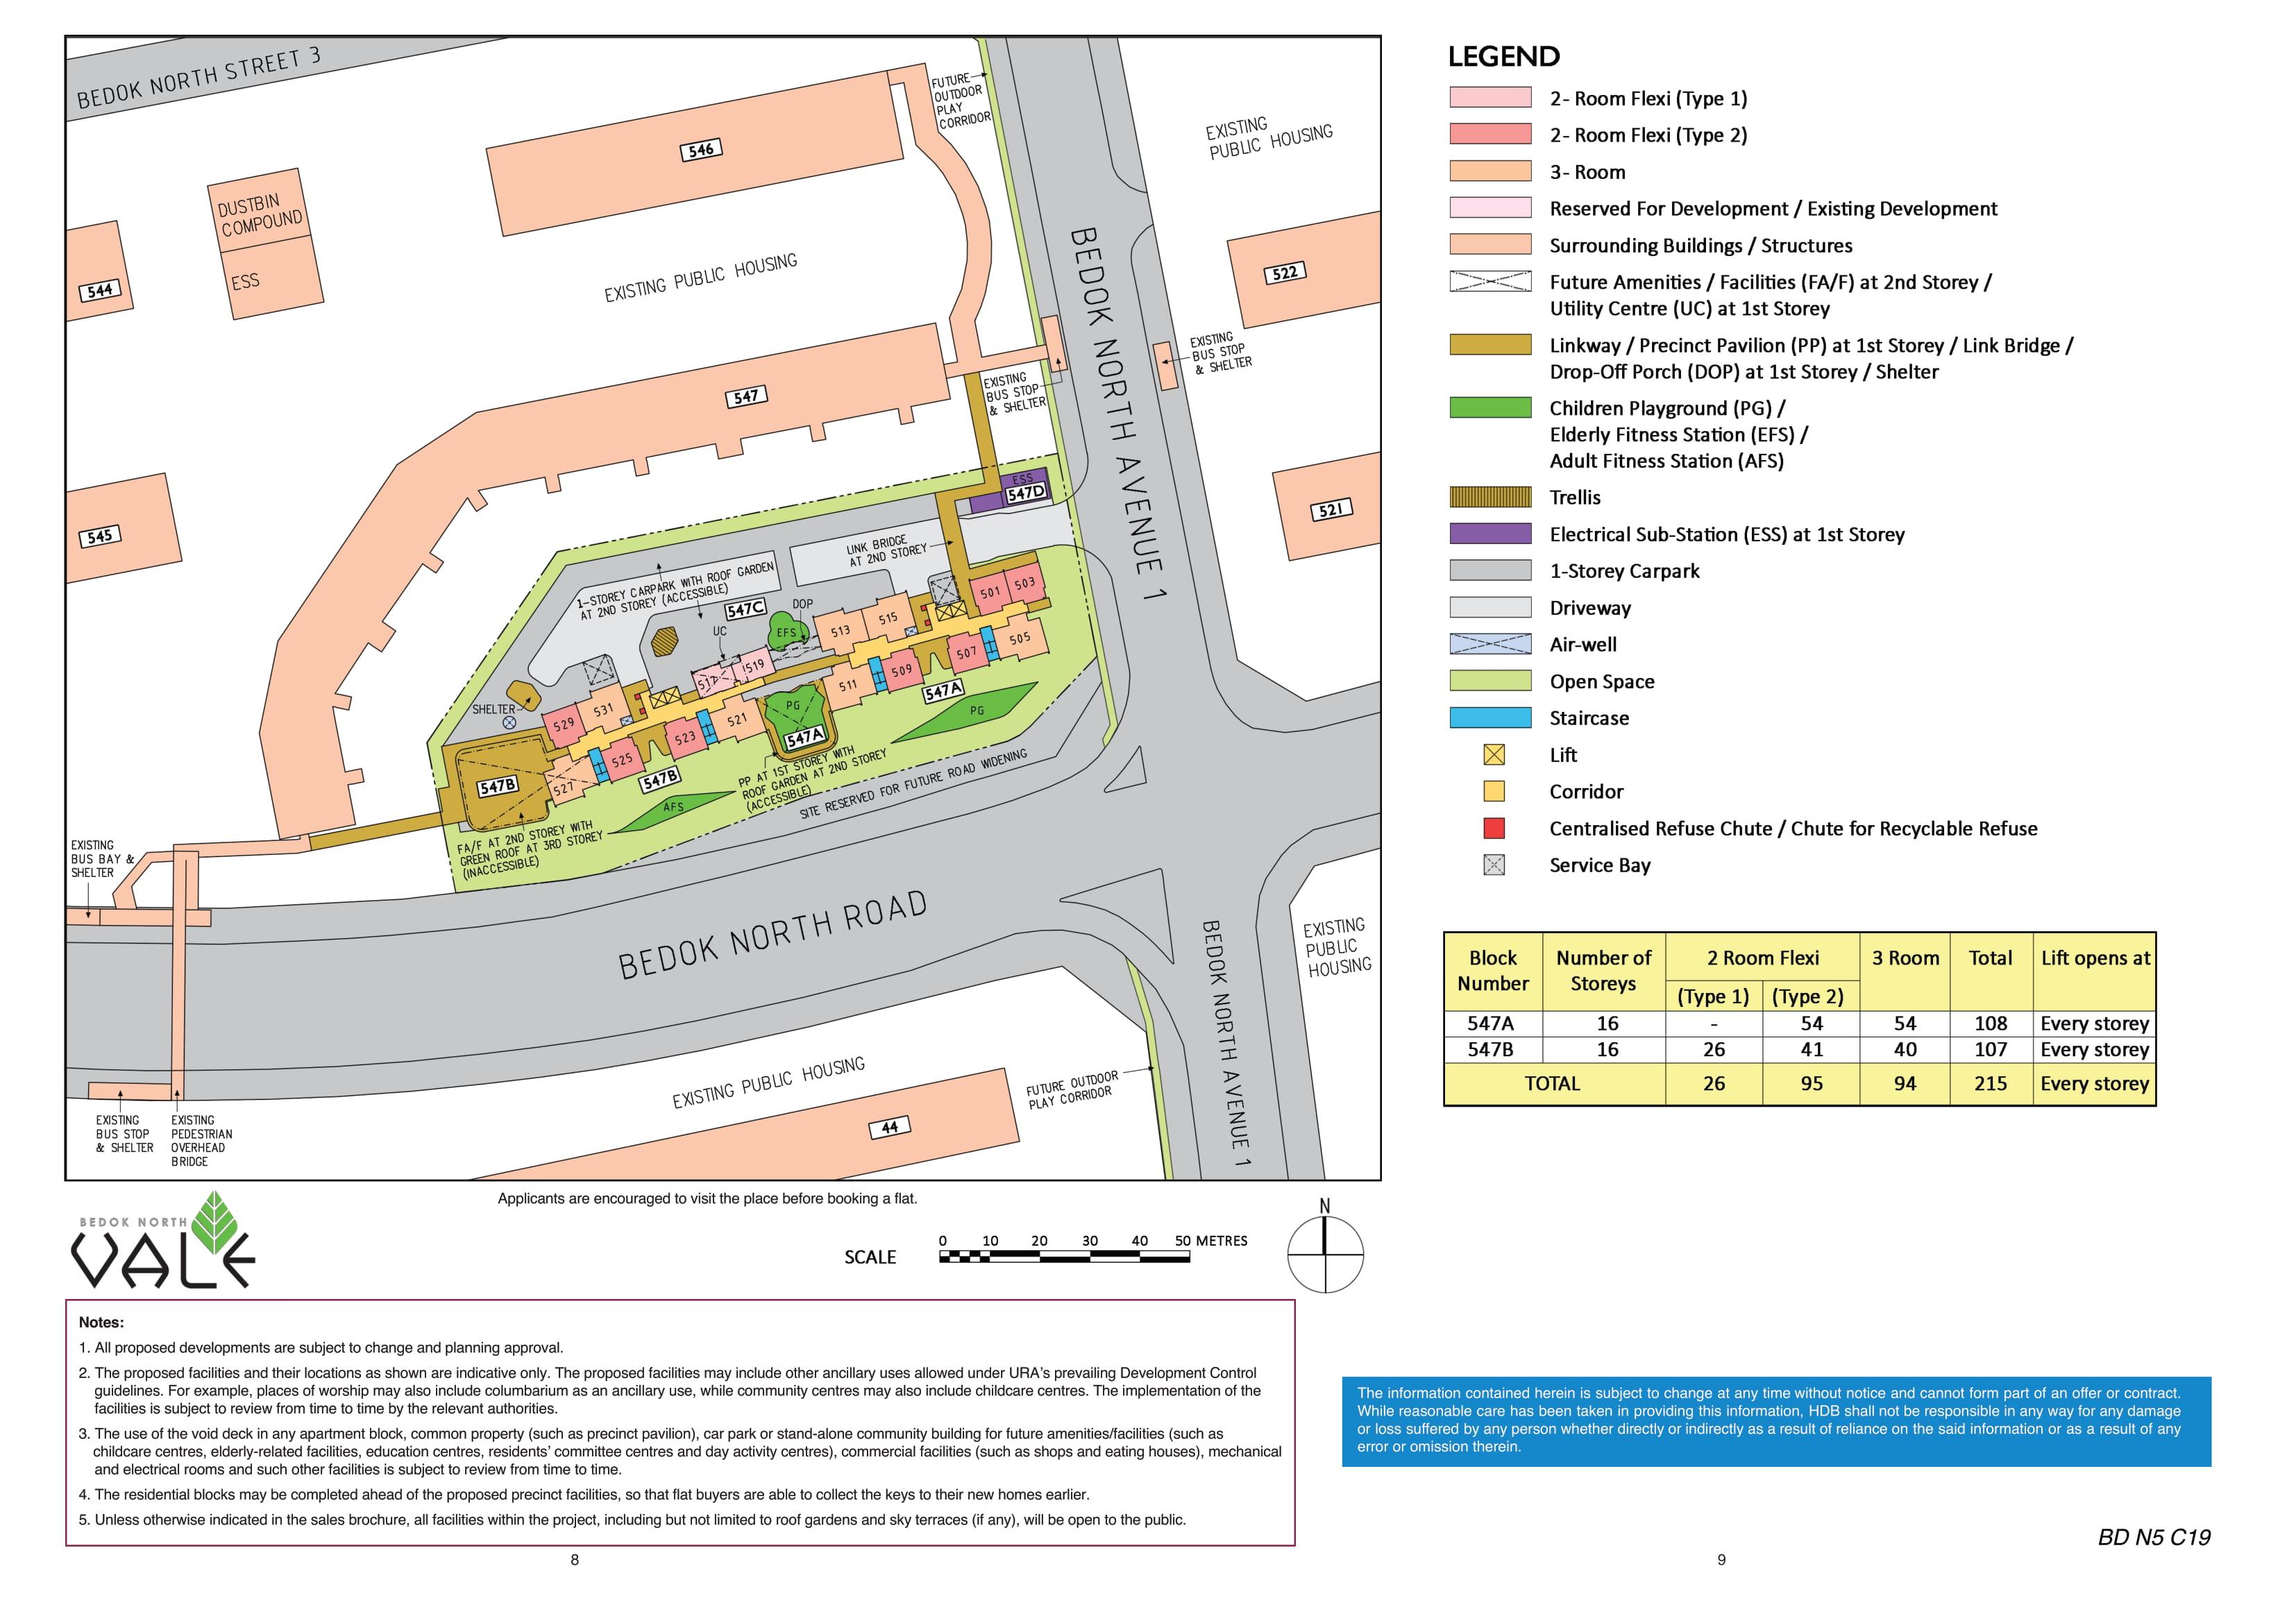 Bedok North Vale Site Plan